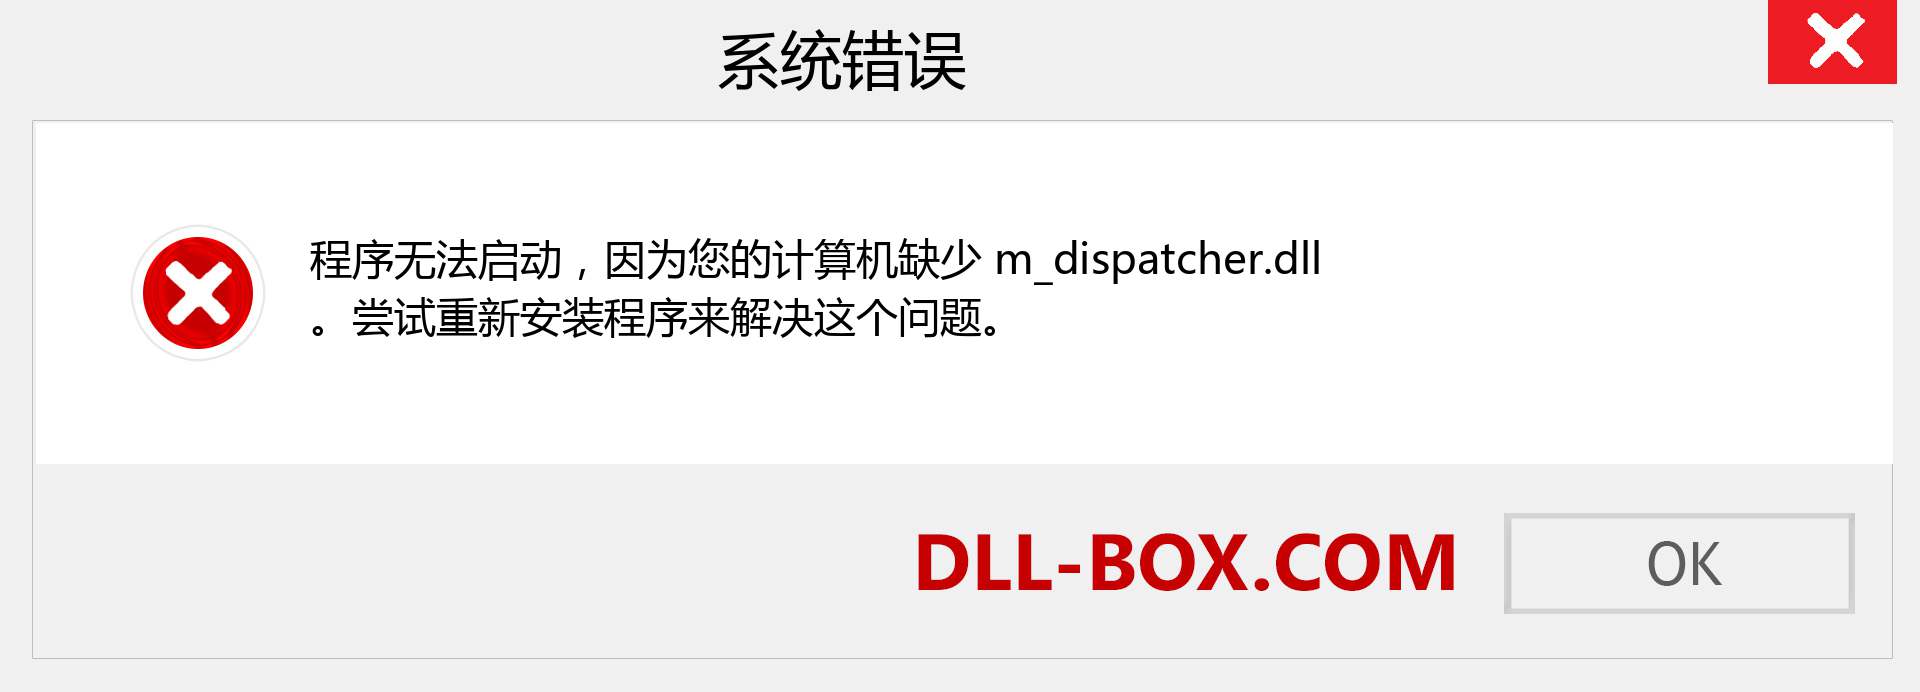 m_dispatcher.dll 文件丢失？。 适用于 Windows 7、8、10 的下载 - 修复 Windows、照片、图像上的 m_dispatcher dll 丢失错误